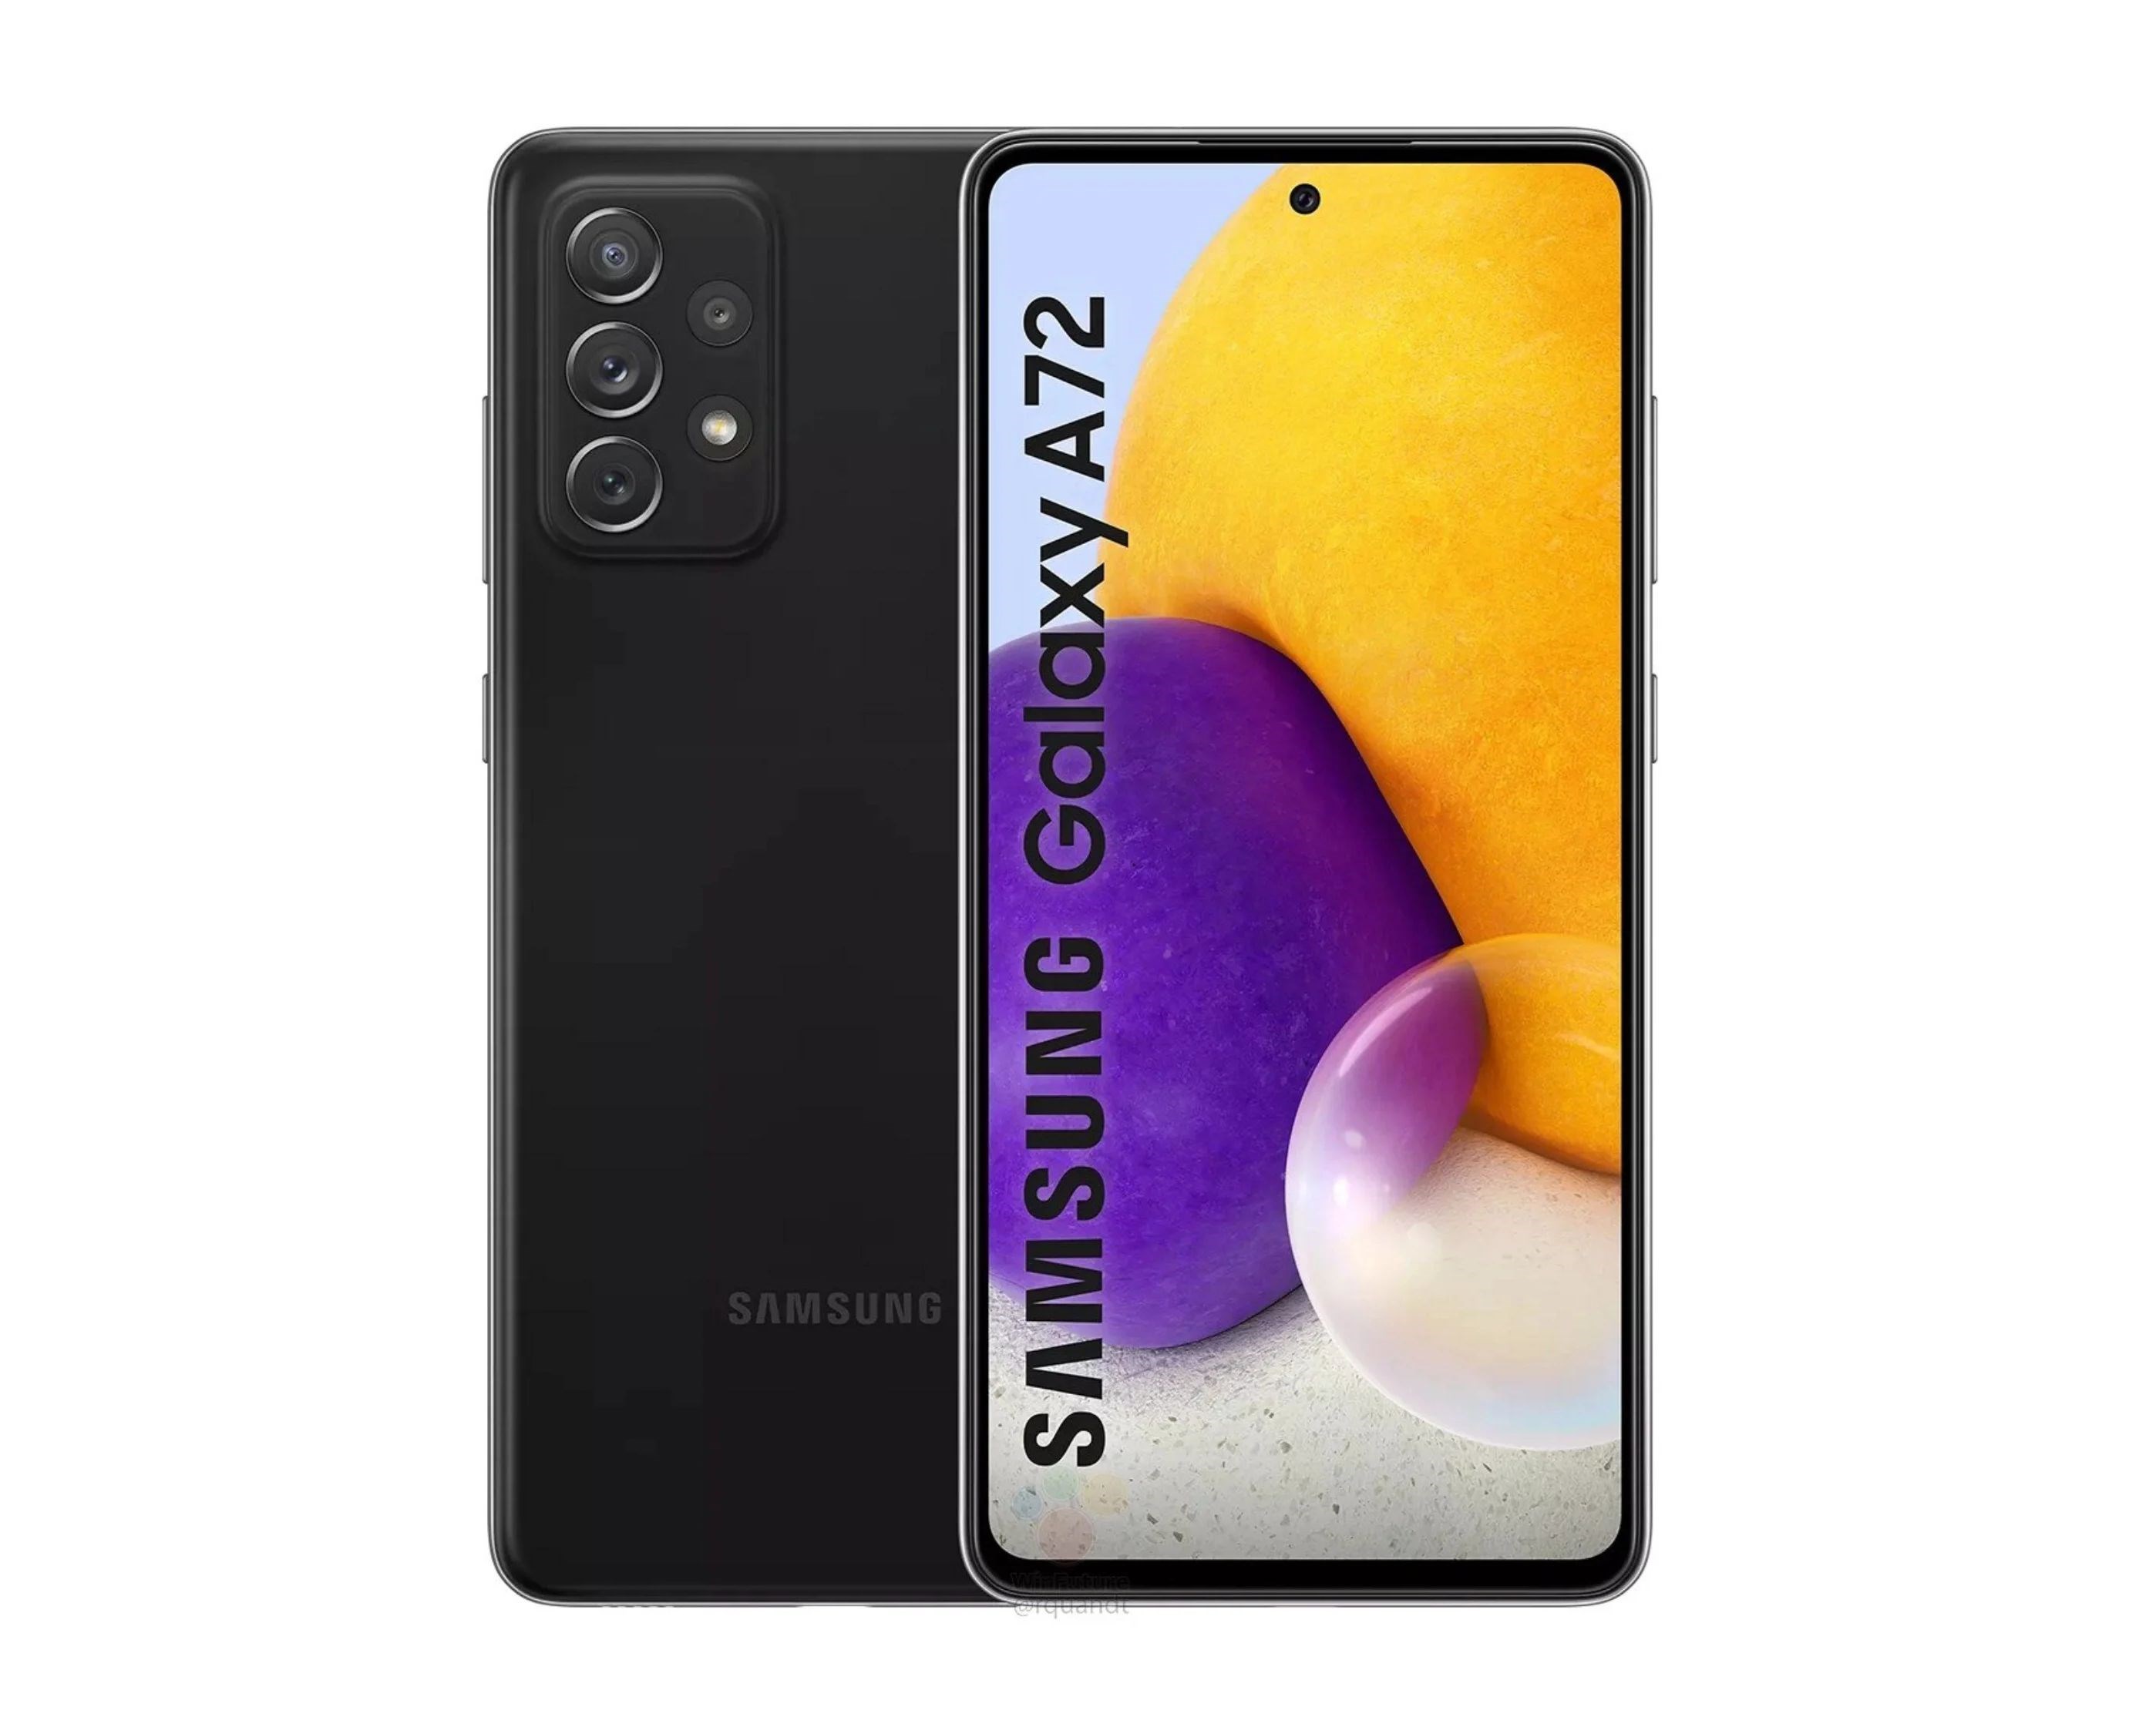 Samsung Galaxy A72'nin teknik özellikleri ve görüntüleri ortaya çıktı